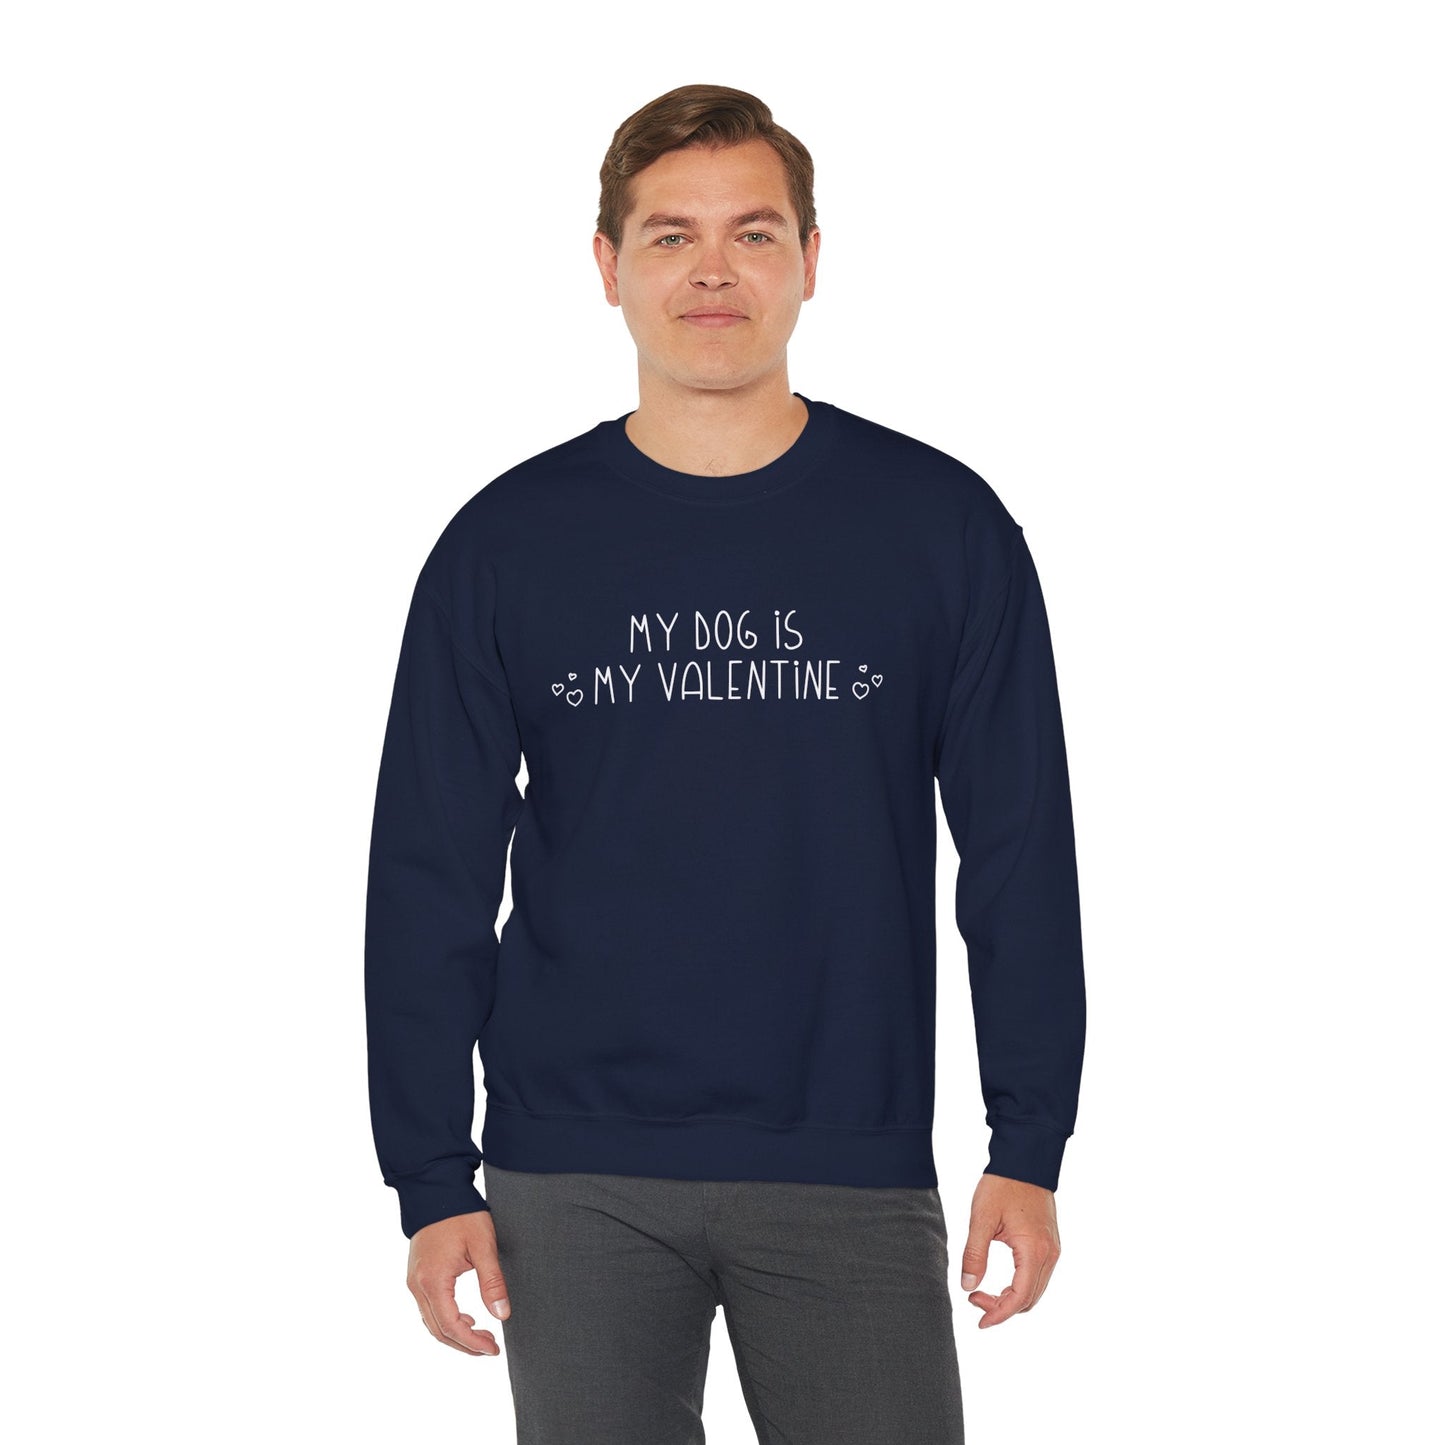 My Dog Is My Valentine | Crewneck Sweatshirt - Detezi Designs-30361066040392542188